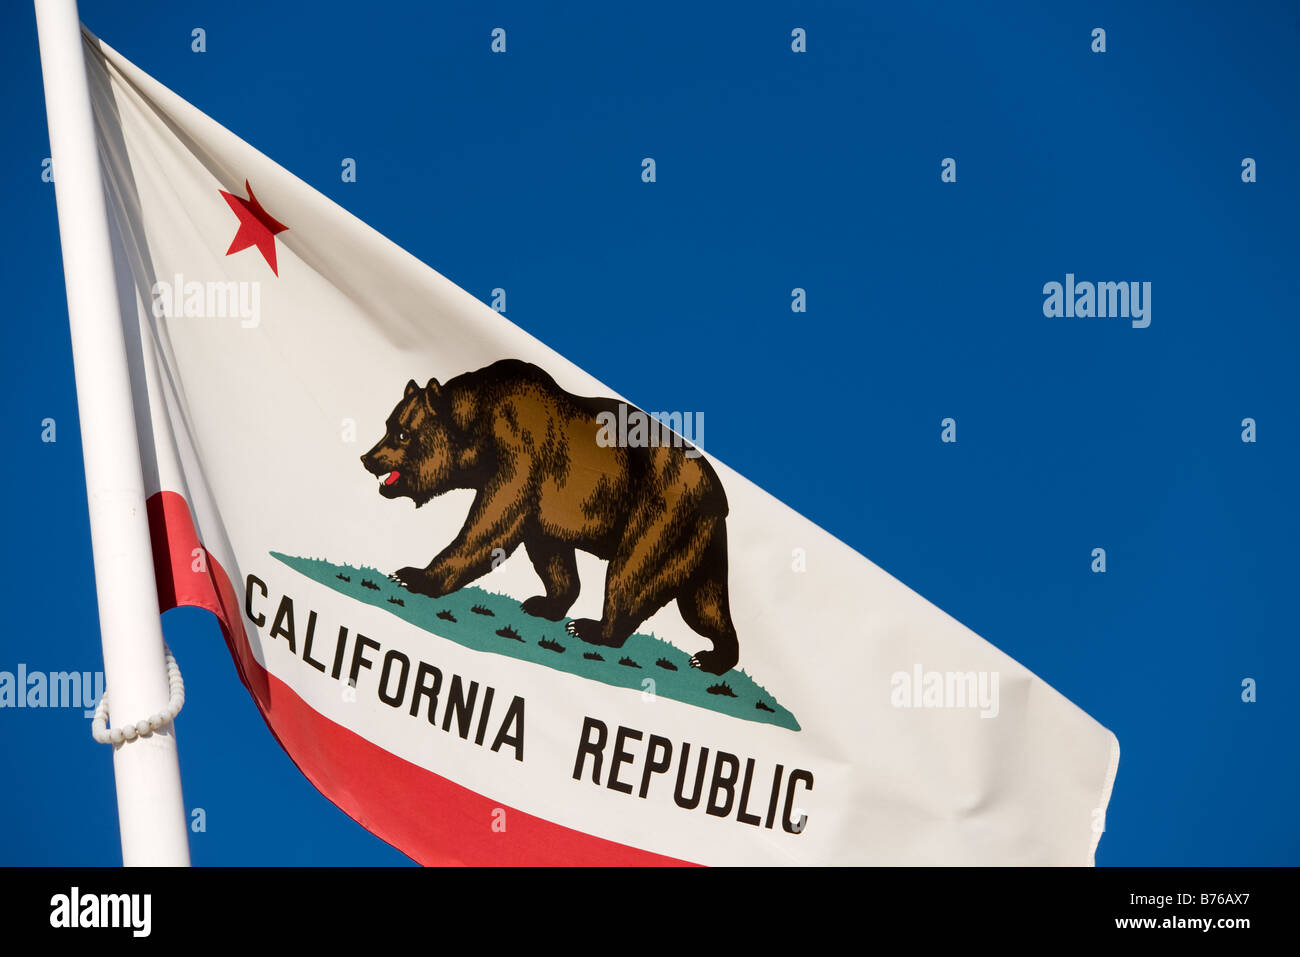 Drapeau de l'état californien ou Golden State flag, avec le mot, 'California' sous les étoiles et l'ours Banque D'Images